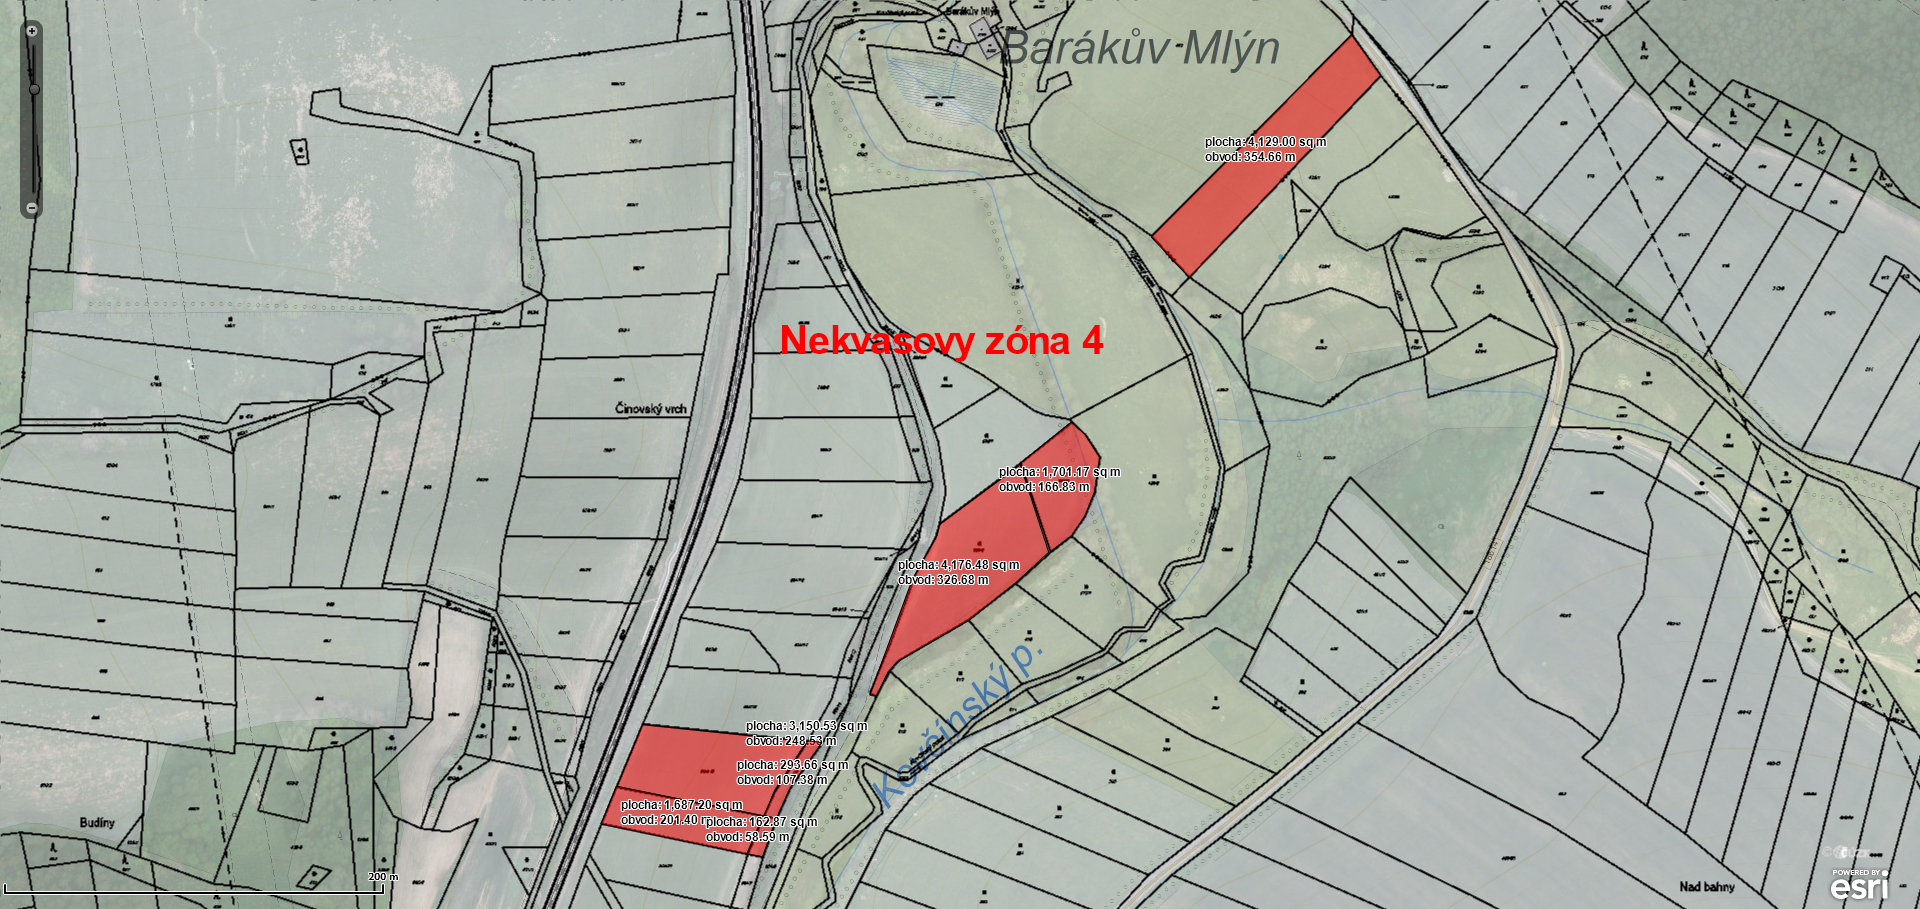 Pozemky Nekvasovy-4.zony  